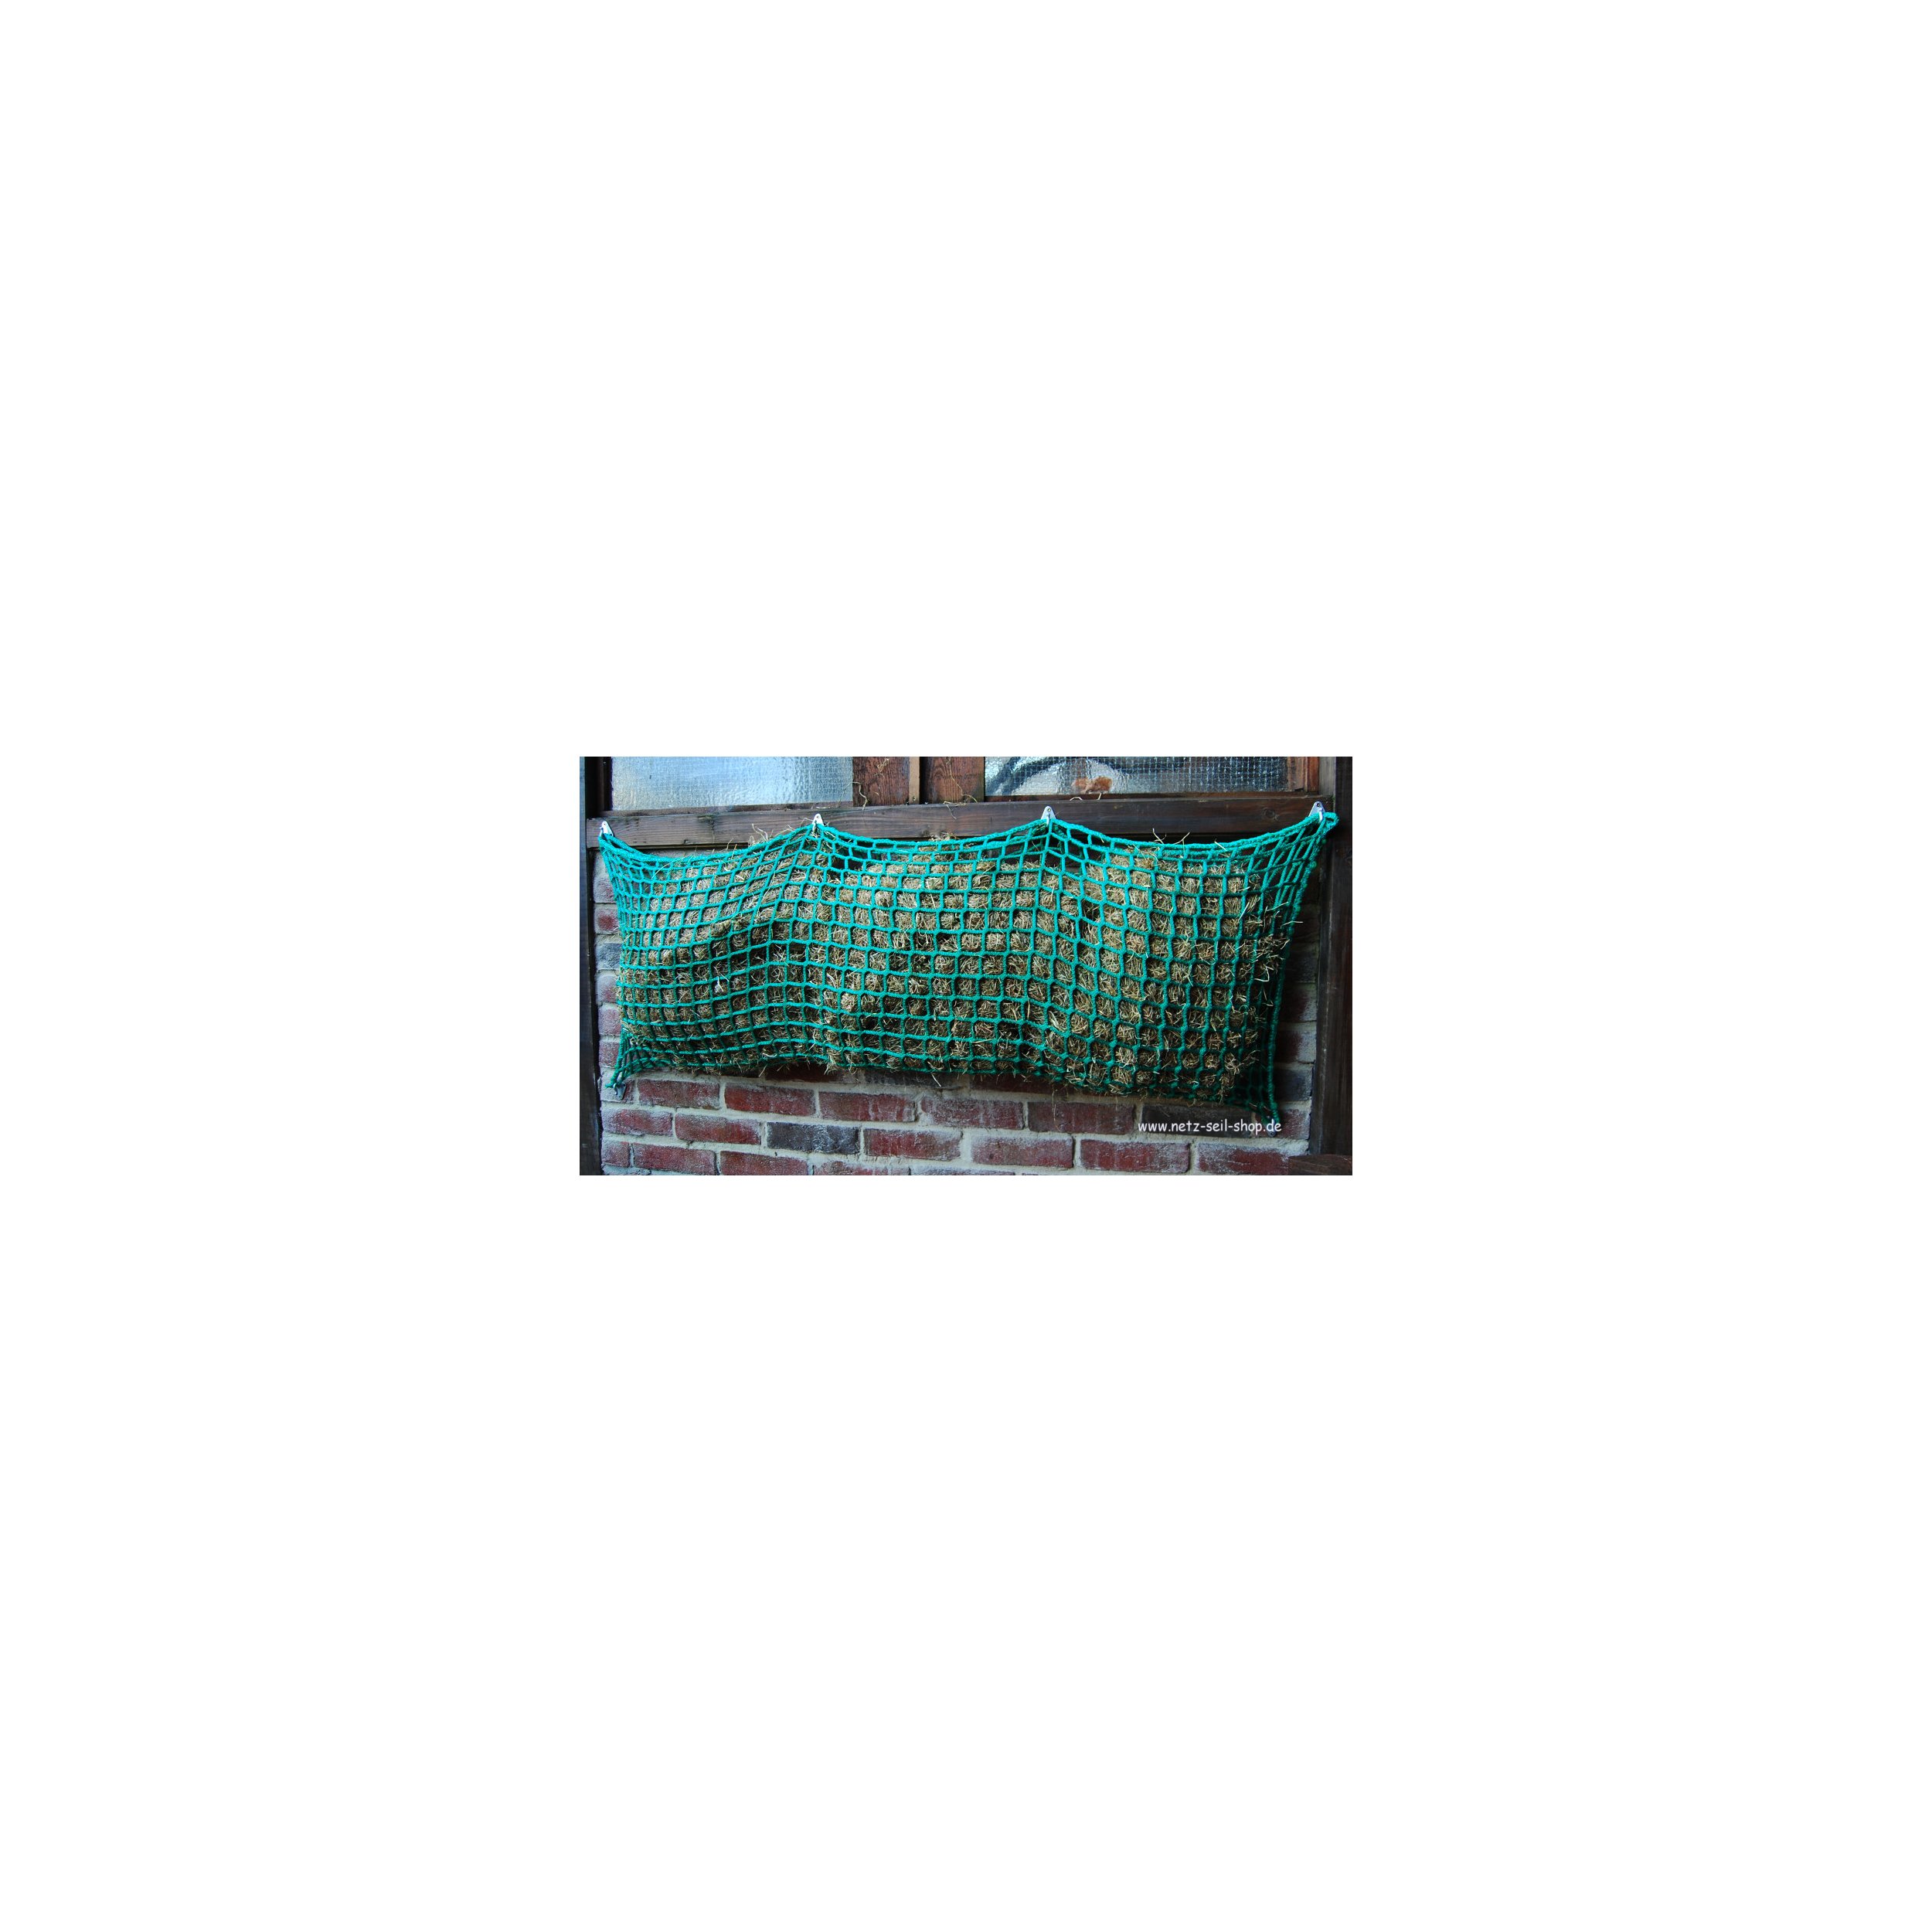 Hooi net in zakvorm, 1,40 m breed, hoogte 1,00 m Ø 5 mm garen dikte, # 30 mm maas